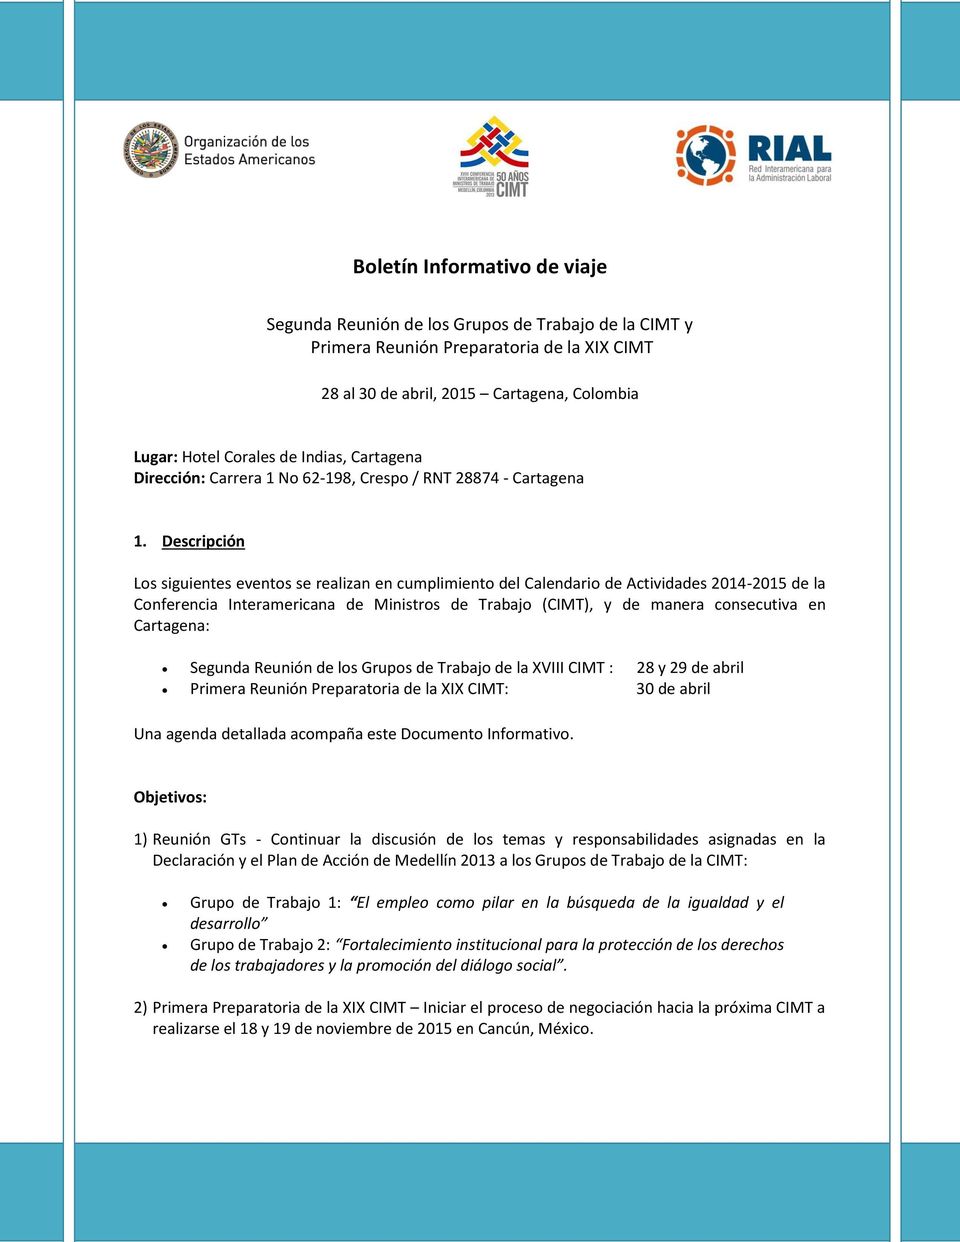 Descripción Los siguientes eventos se realizan en cumplimiento del Calendario de Actividades 2014-2015 de la Conferencia Interamericana de Ministros de Trabajo (CIMT), y de manera consecutiva en